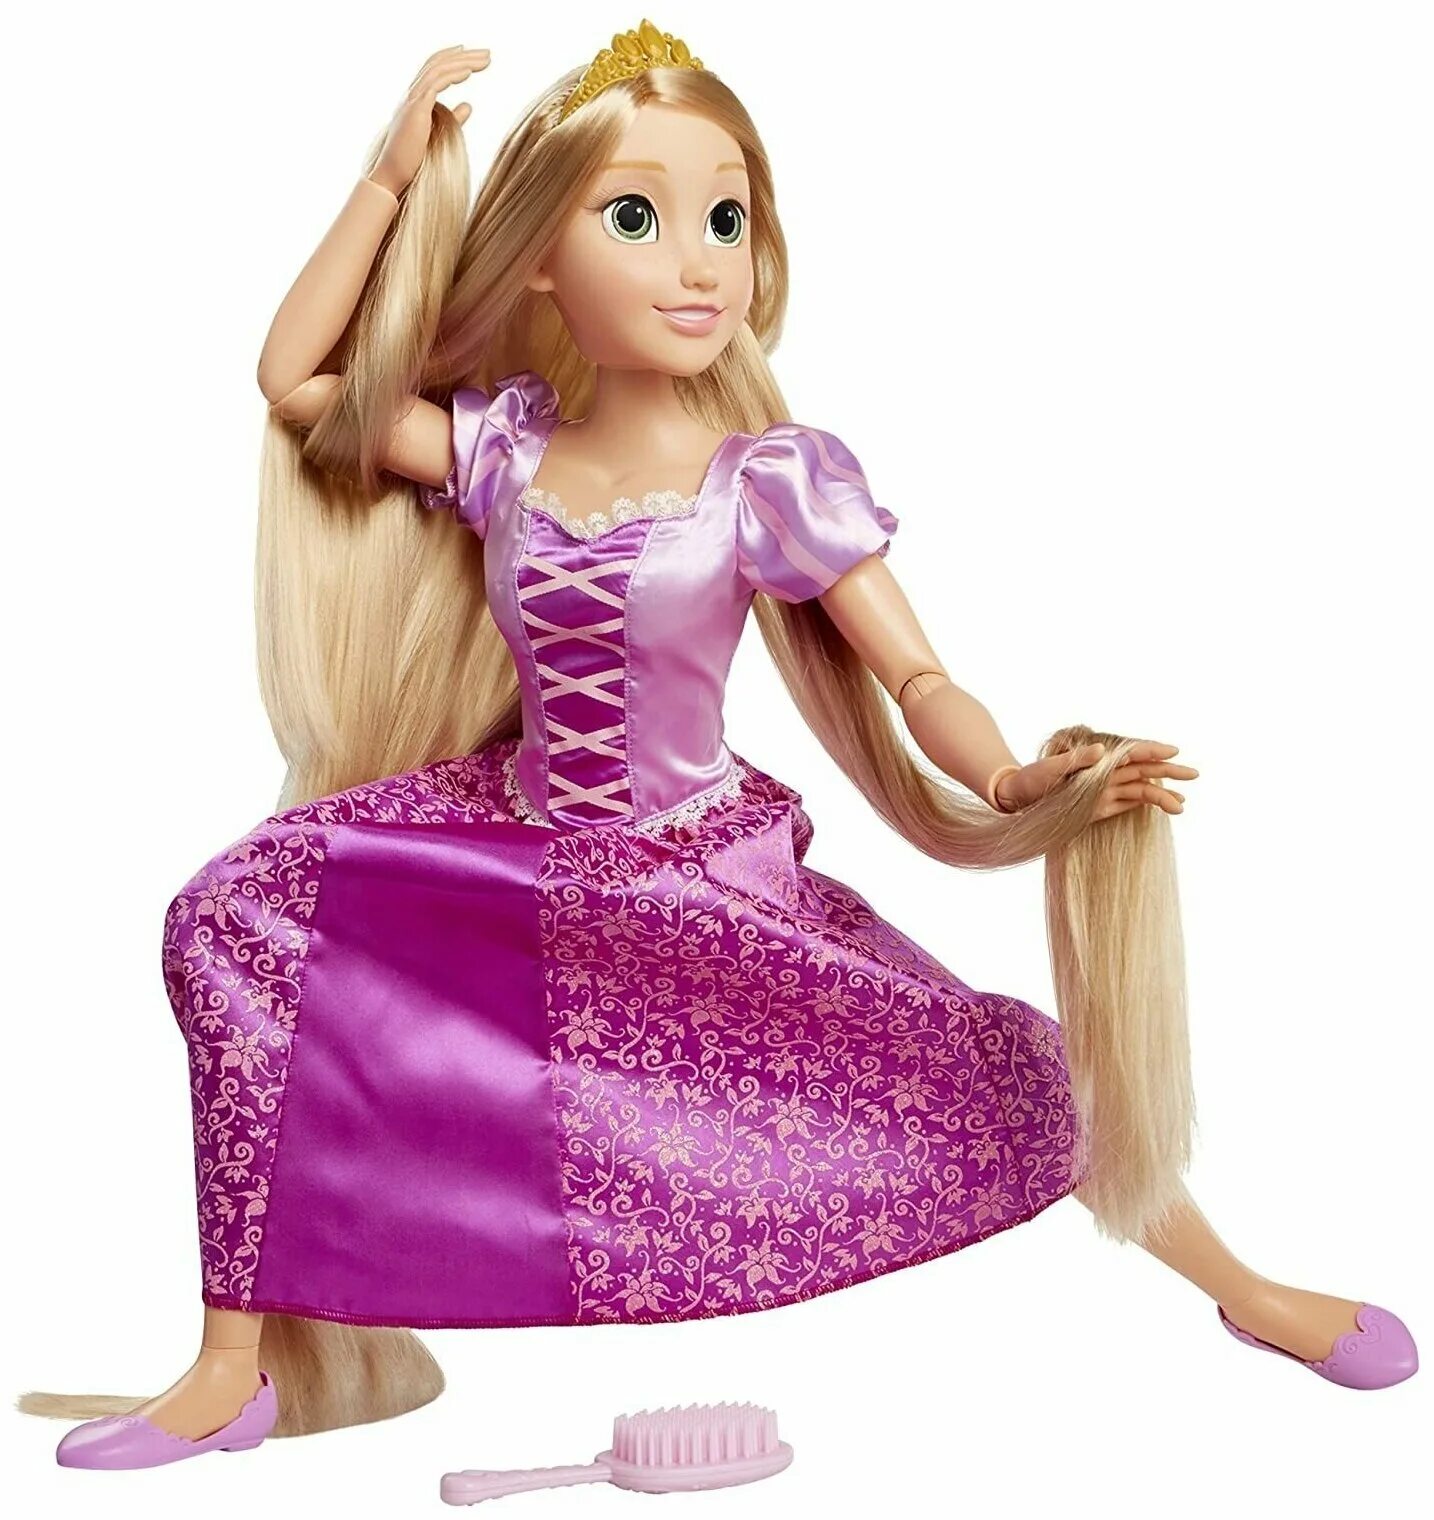 Куклы дисней купить. Кукла Jakks Pacific Disney Princess Рапунцель, 80 см, 61773. Кукла принцесса Рапунцель 80 см. Кукла Рапунцель 80 см принцесса Диснея. Disney Jakks Pacific принцесса Рапунцель.